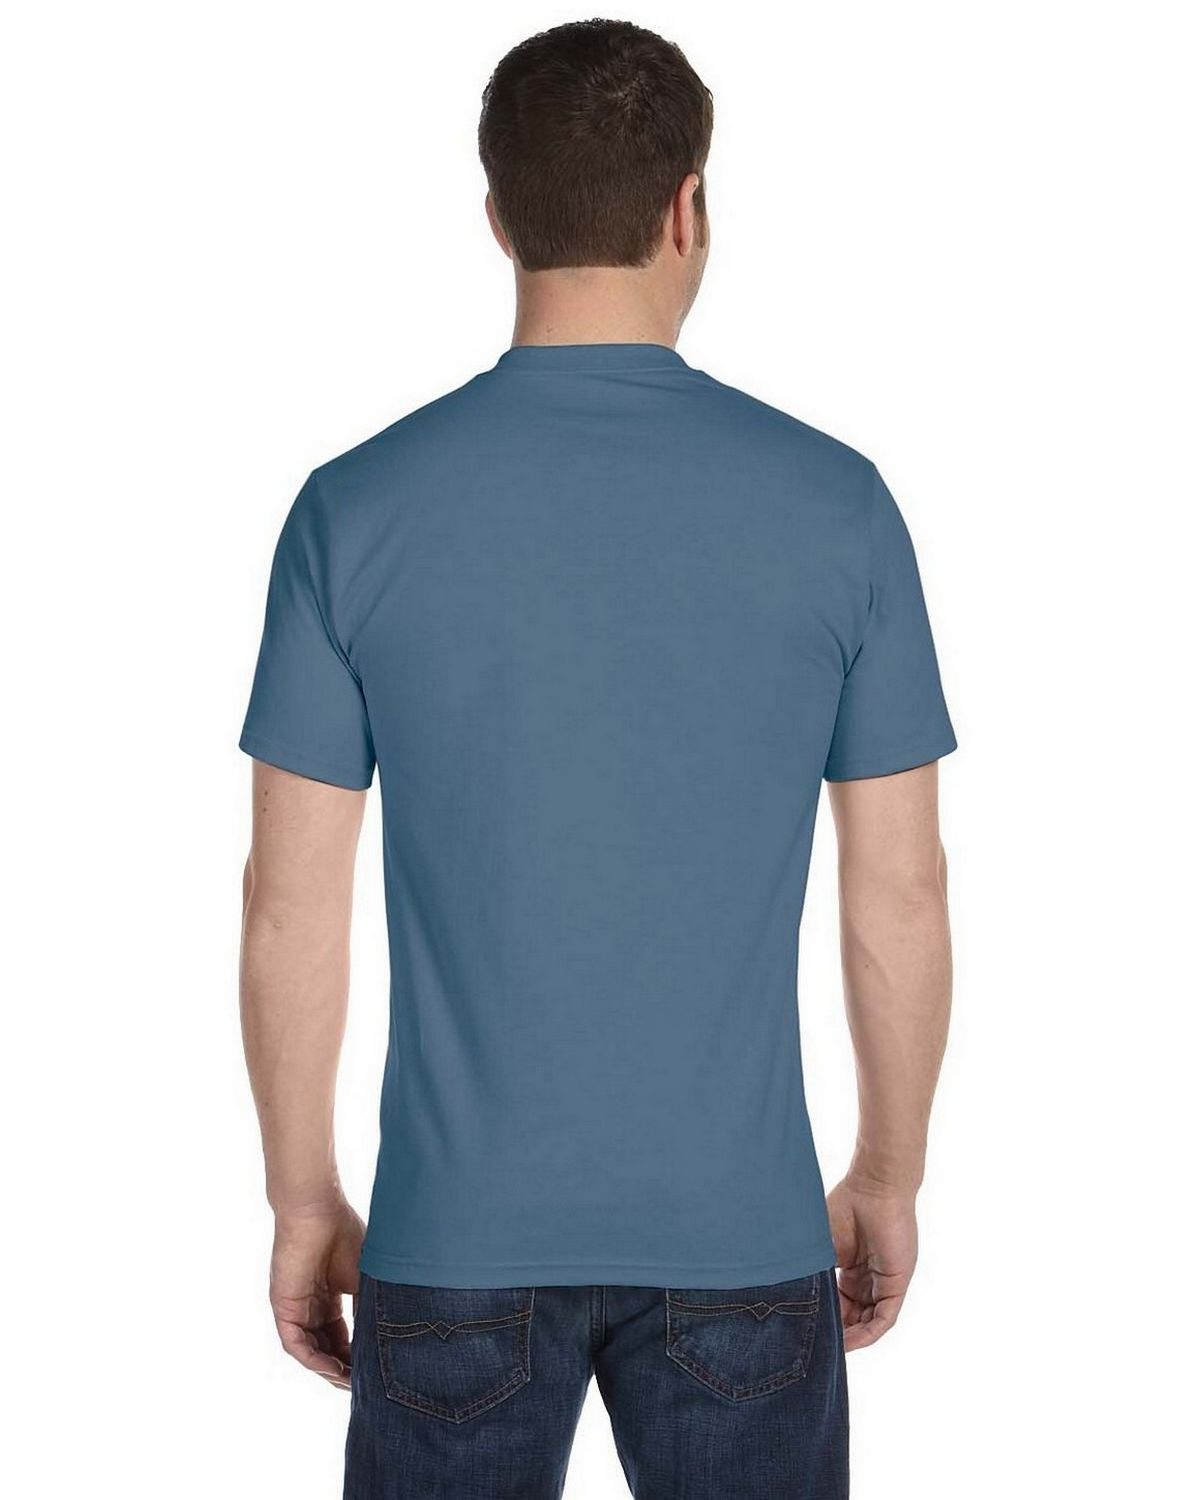 Hanes 5280 100% Comfort Soft Cotton T Shirt - ApparelnBags.com